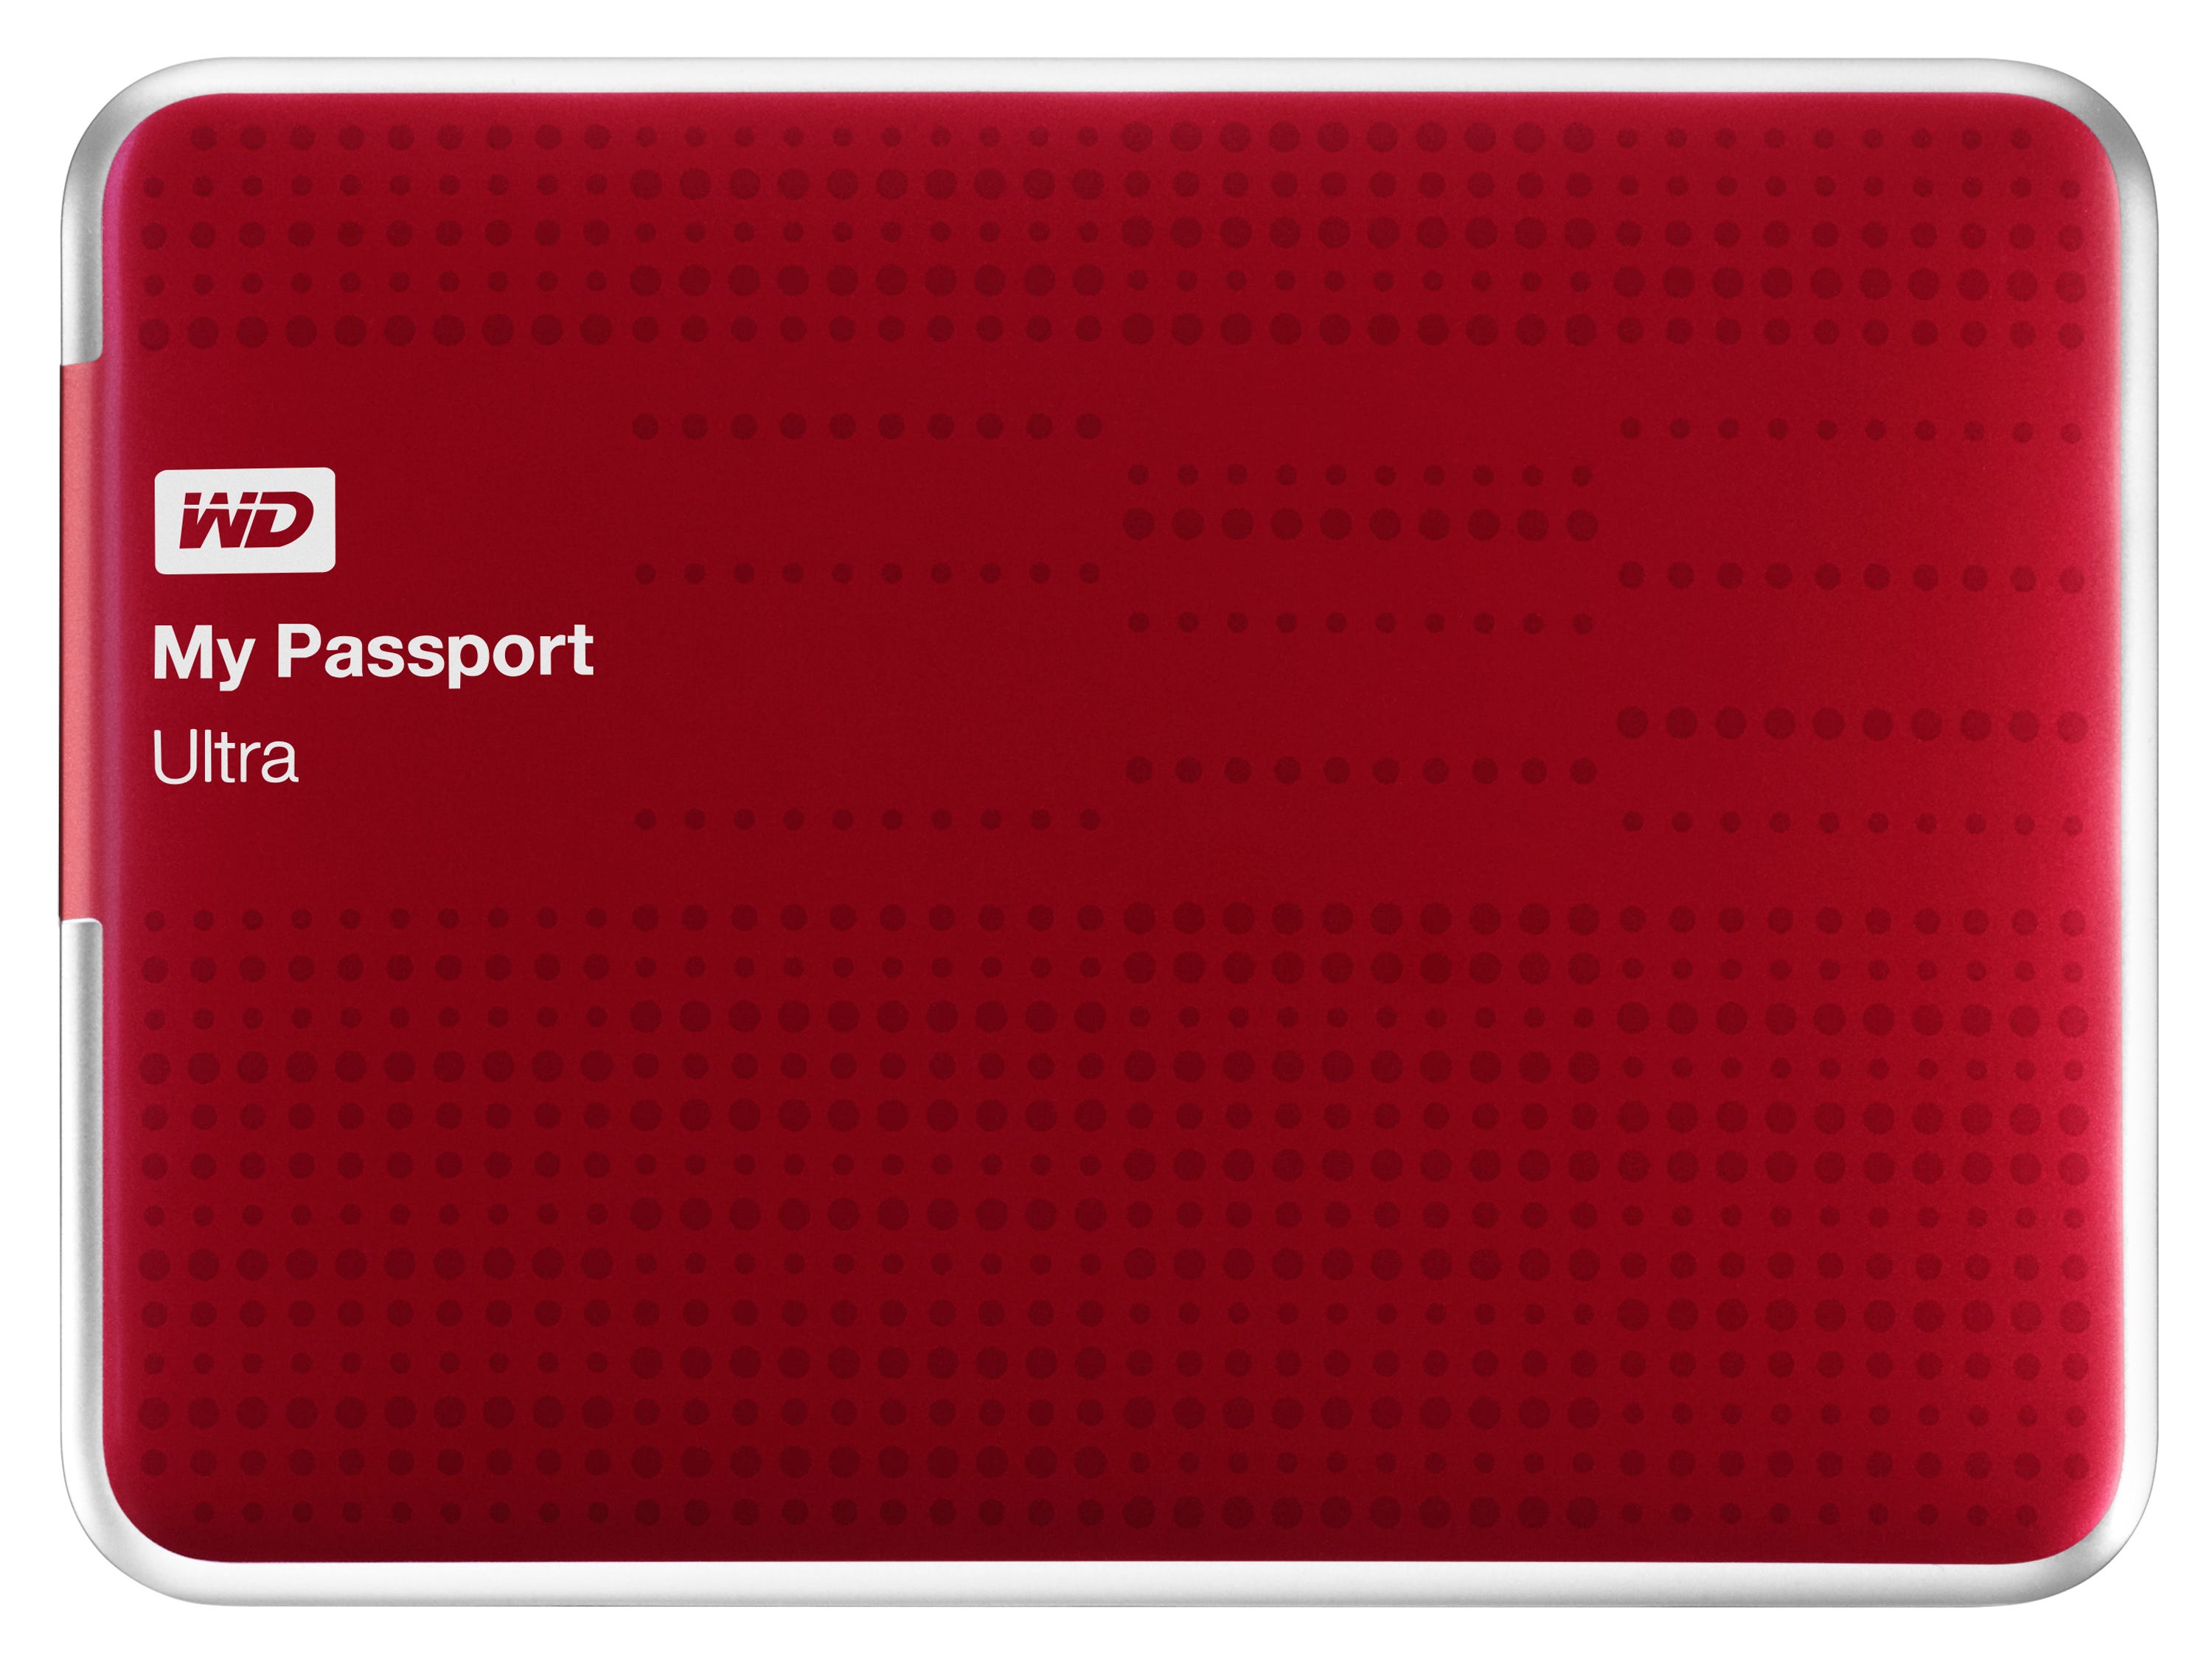 A photo of Western Digital's My Passport external drive.